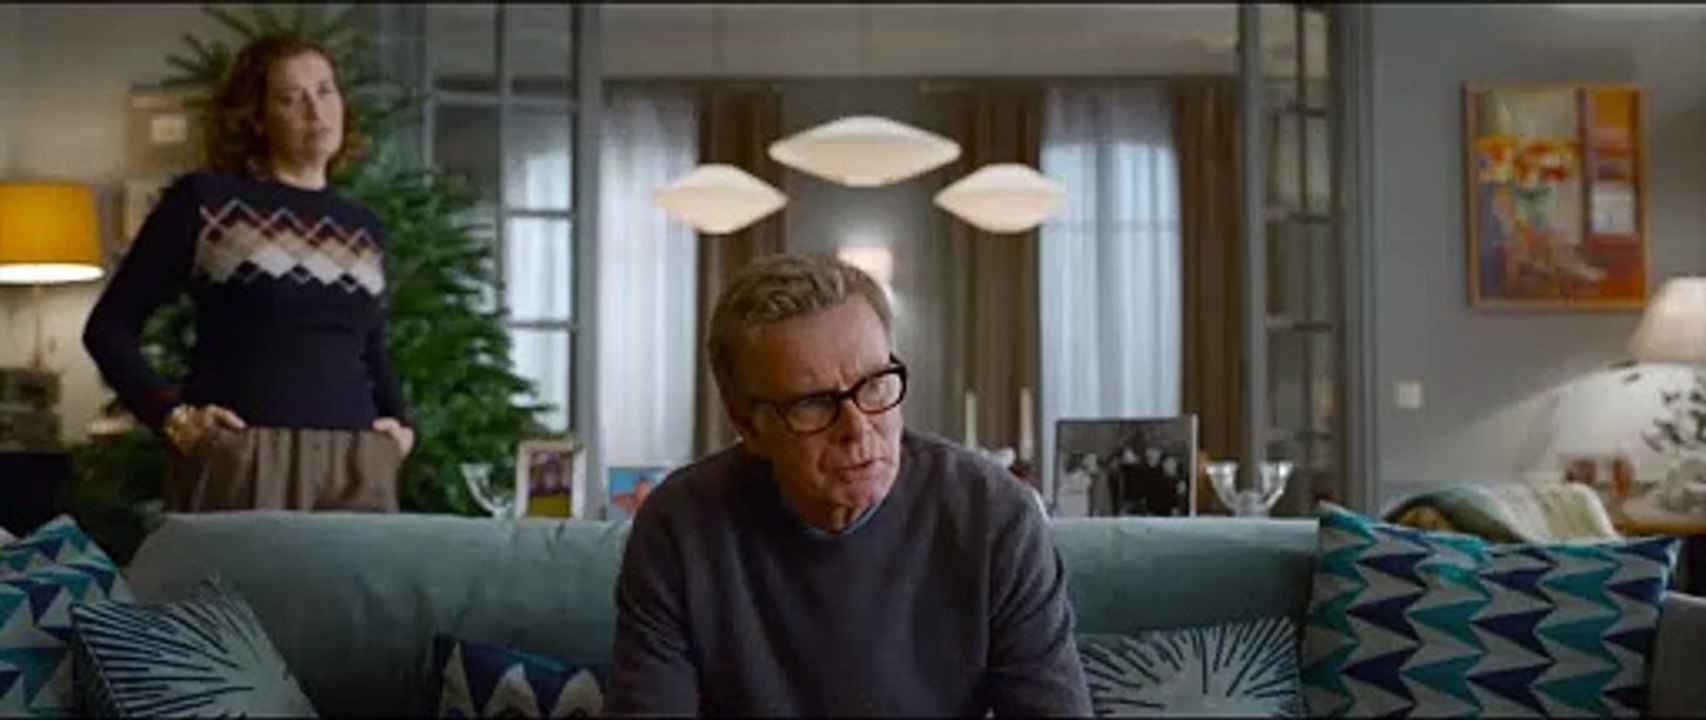 Fast perfekte Weihnachten - Trailer (Deutsch) HD